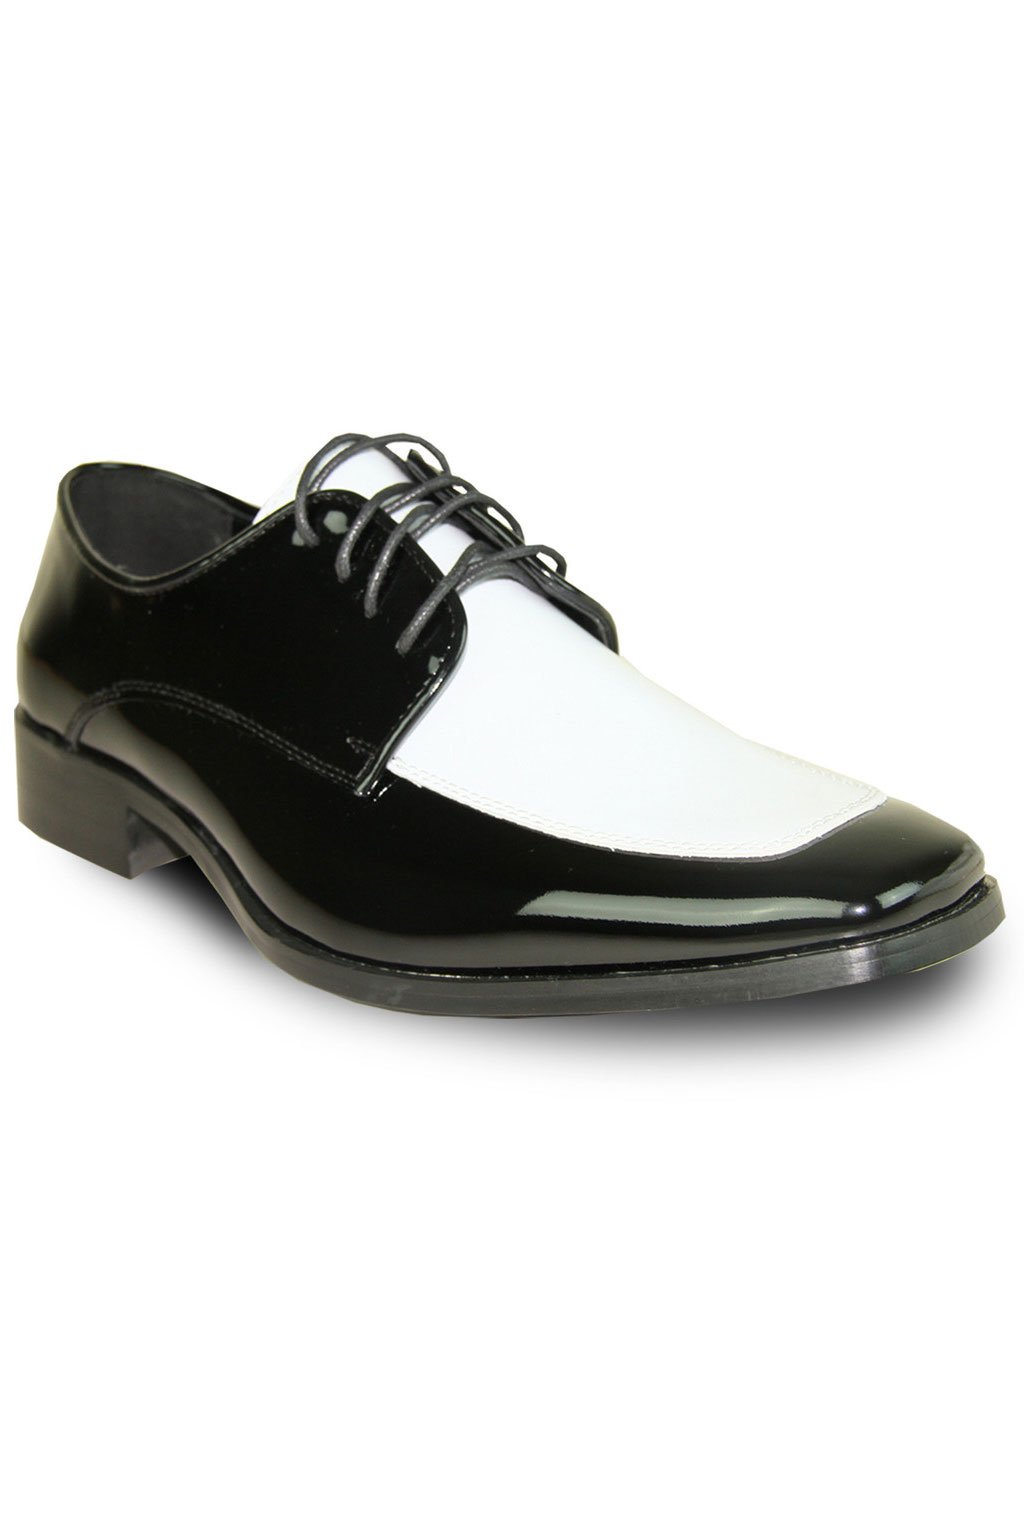 Vangelo "Vittorio" Black and White Vangelo Tuxedo Shoes